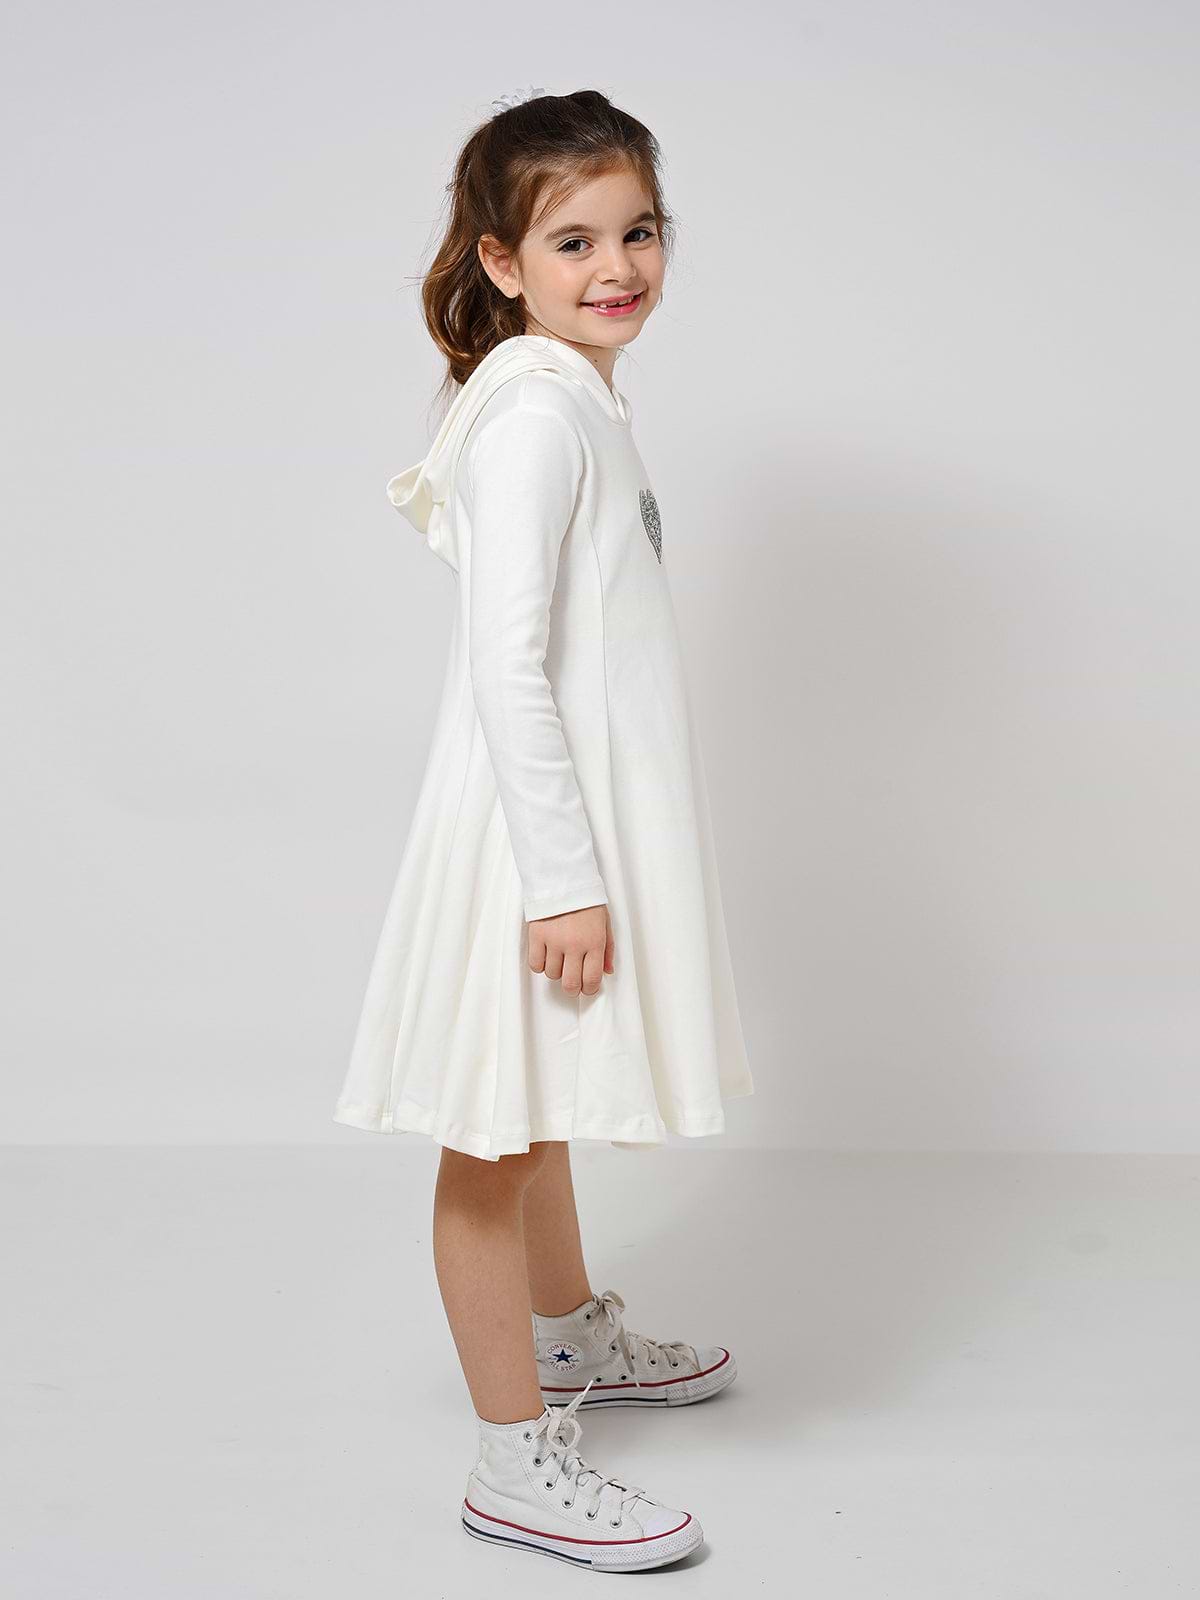 שמלת אריאל קפוצ'ון / ילדות- Almonet|עלמונת